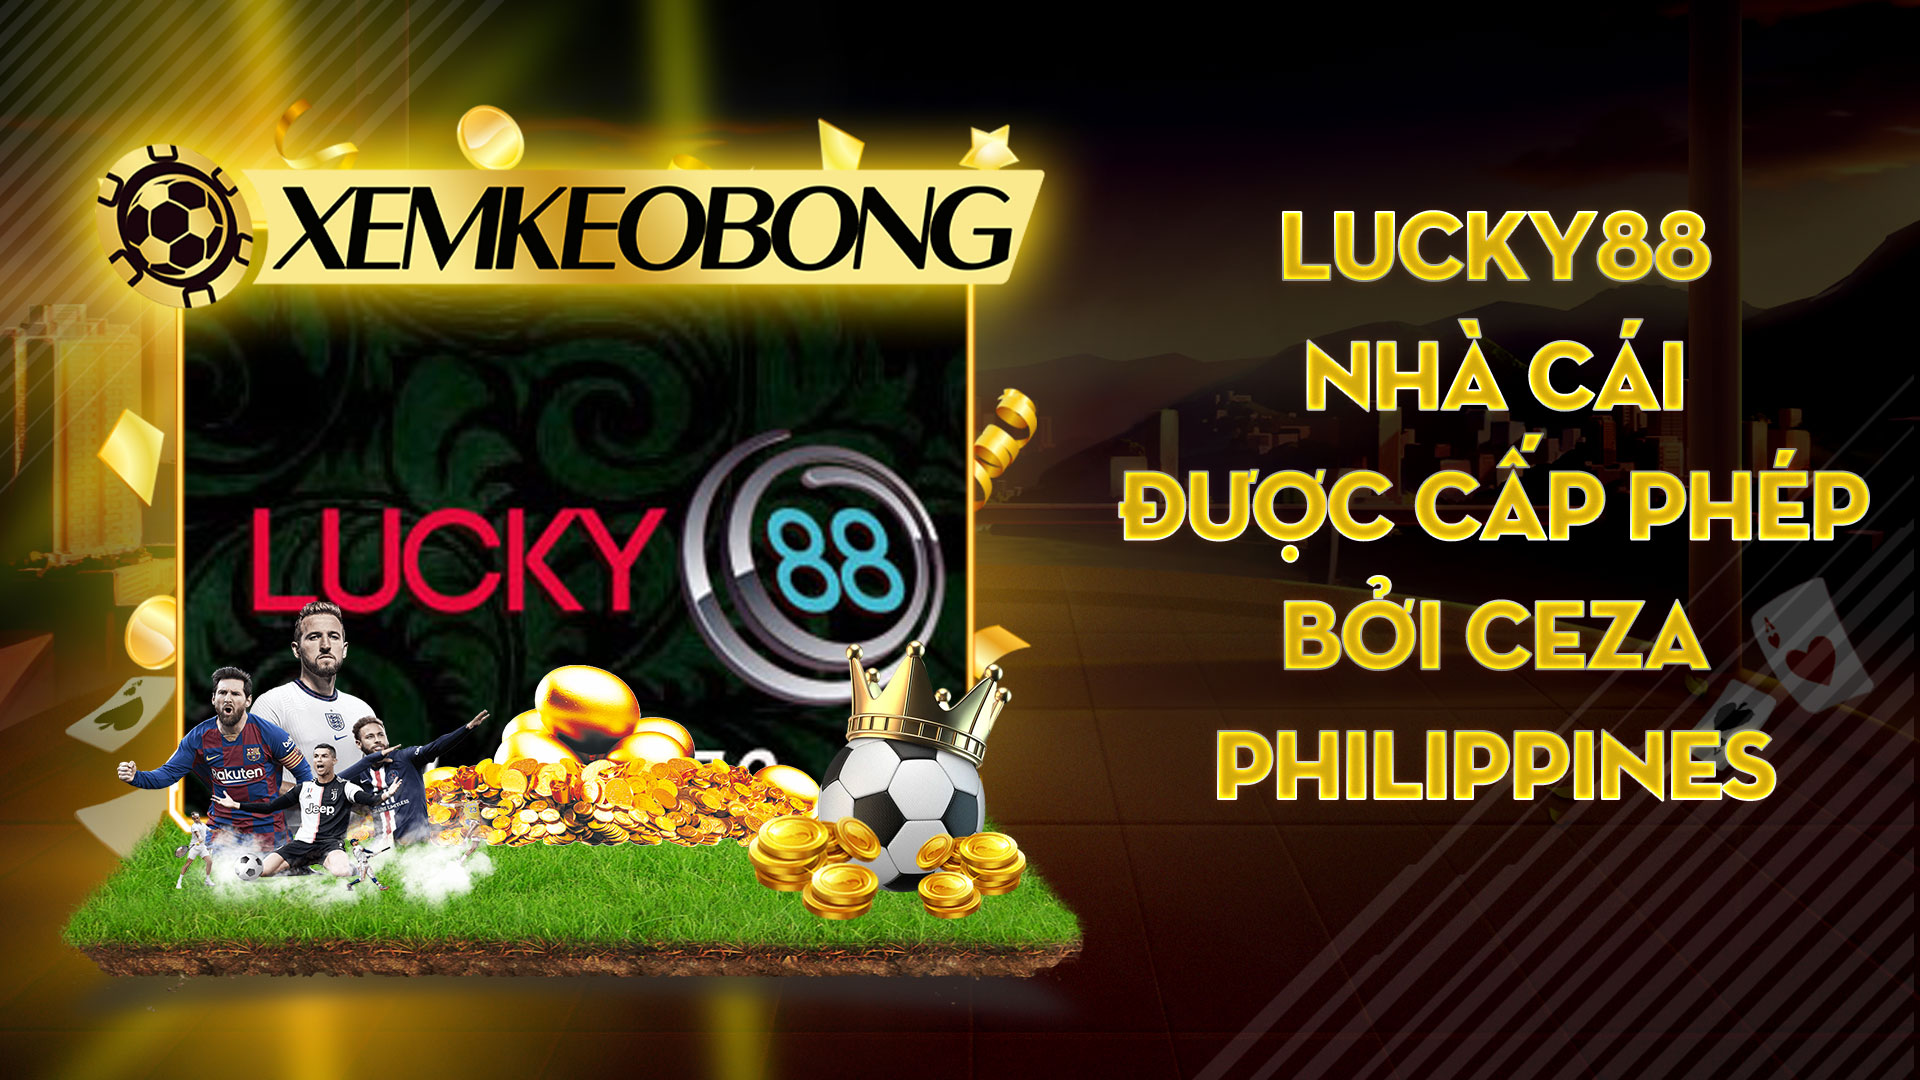 Lucky88 | Nhà cái được cấp phép bởi CEZA Philippines